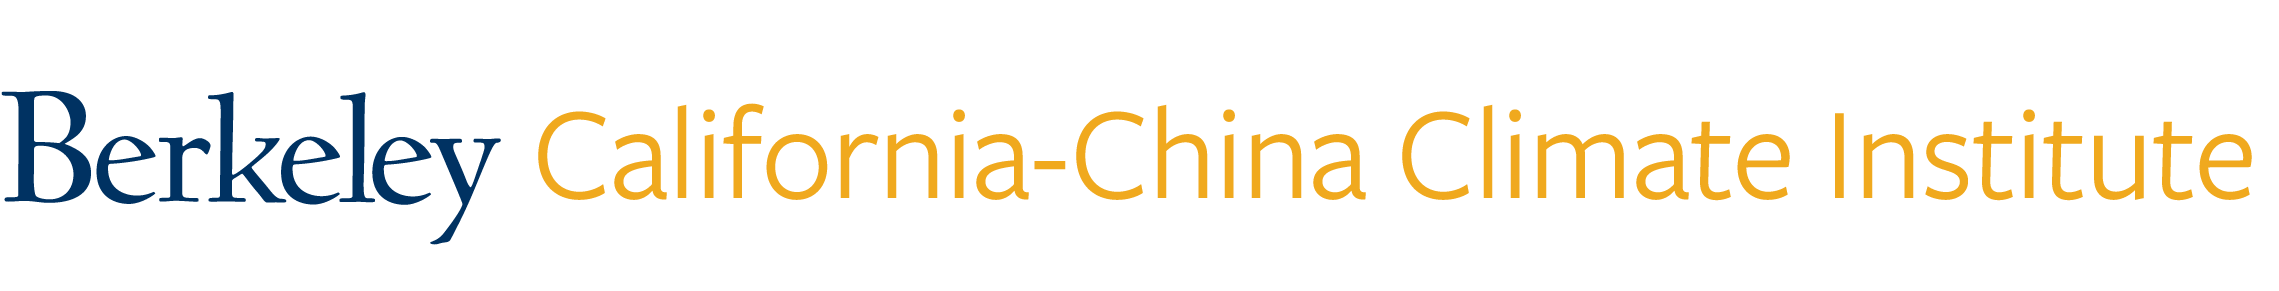 California-China Climate Institute